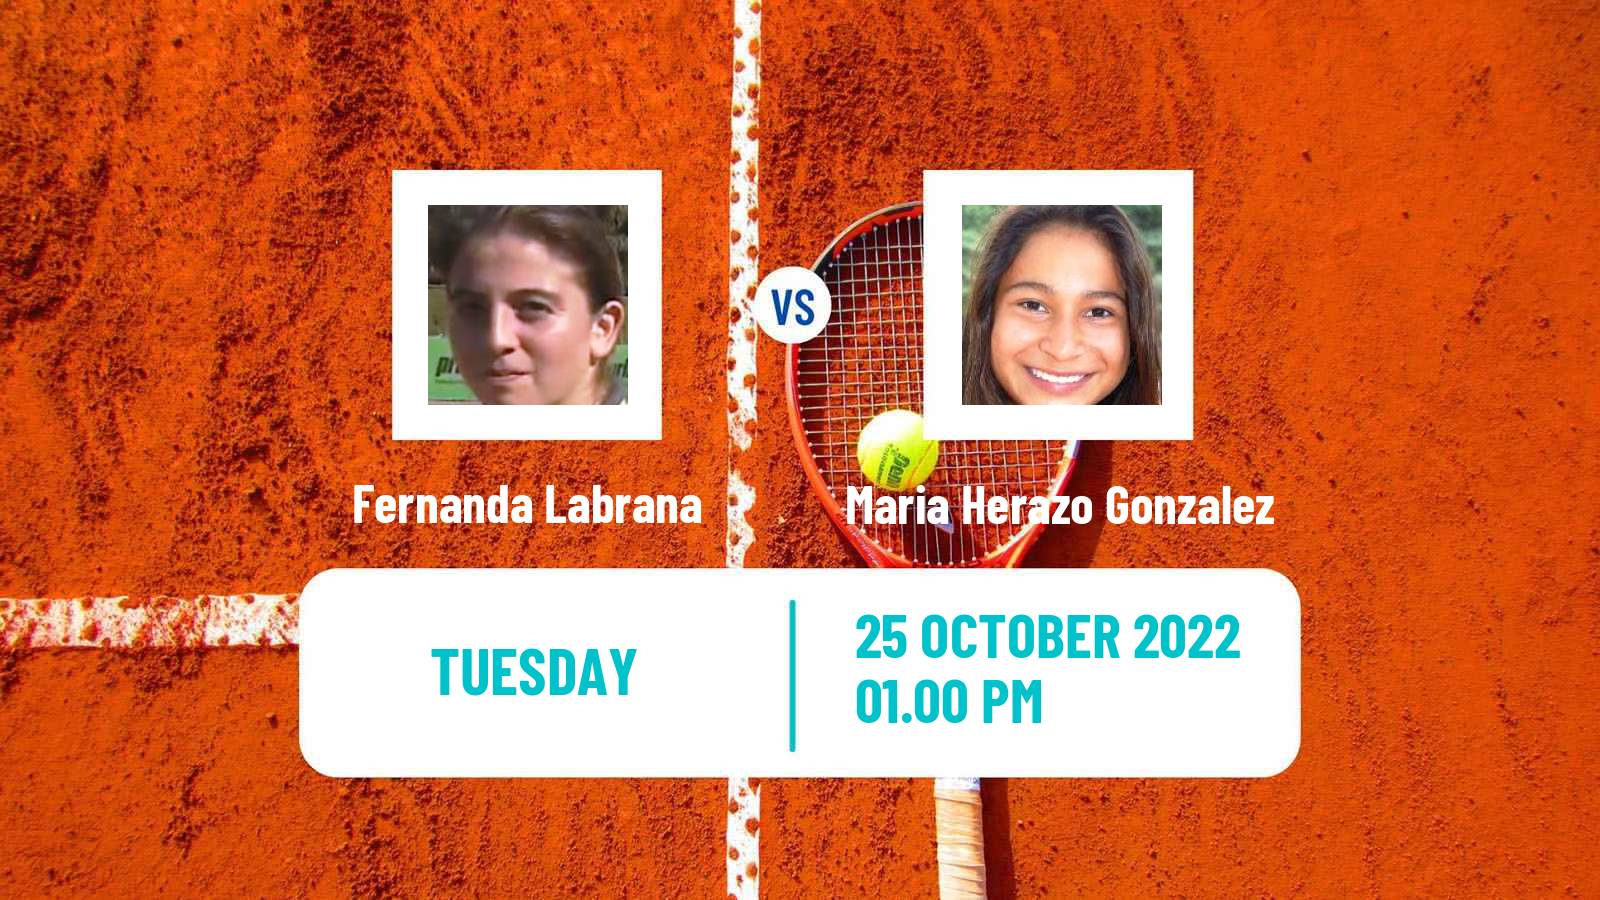 Tennis ITF Tournaments Fernanda Labrana - Maria Herazo Gonzalez